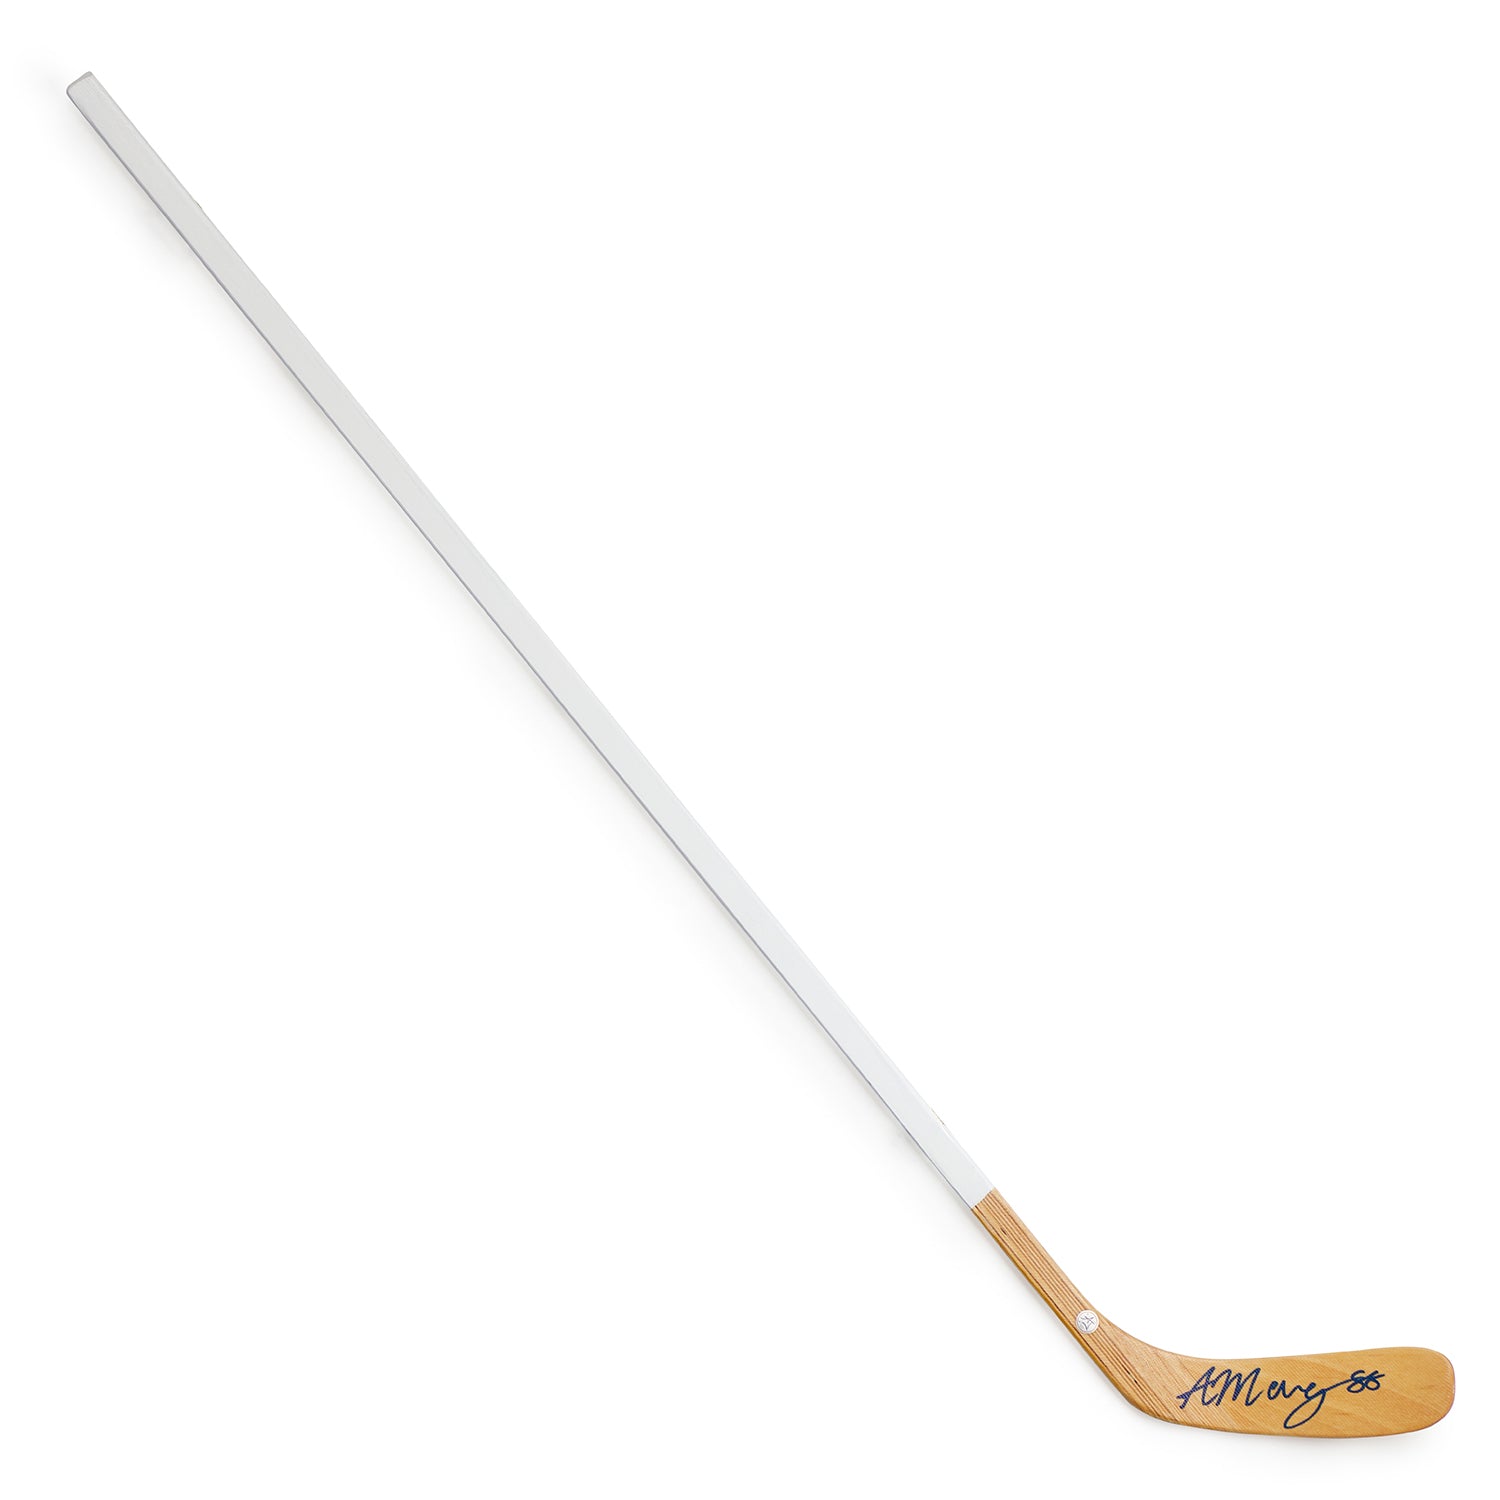 Andrew Mangiapane Autographed White Hockey Stick